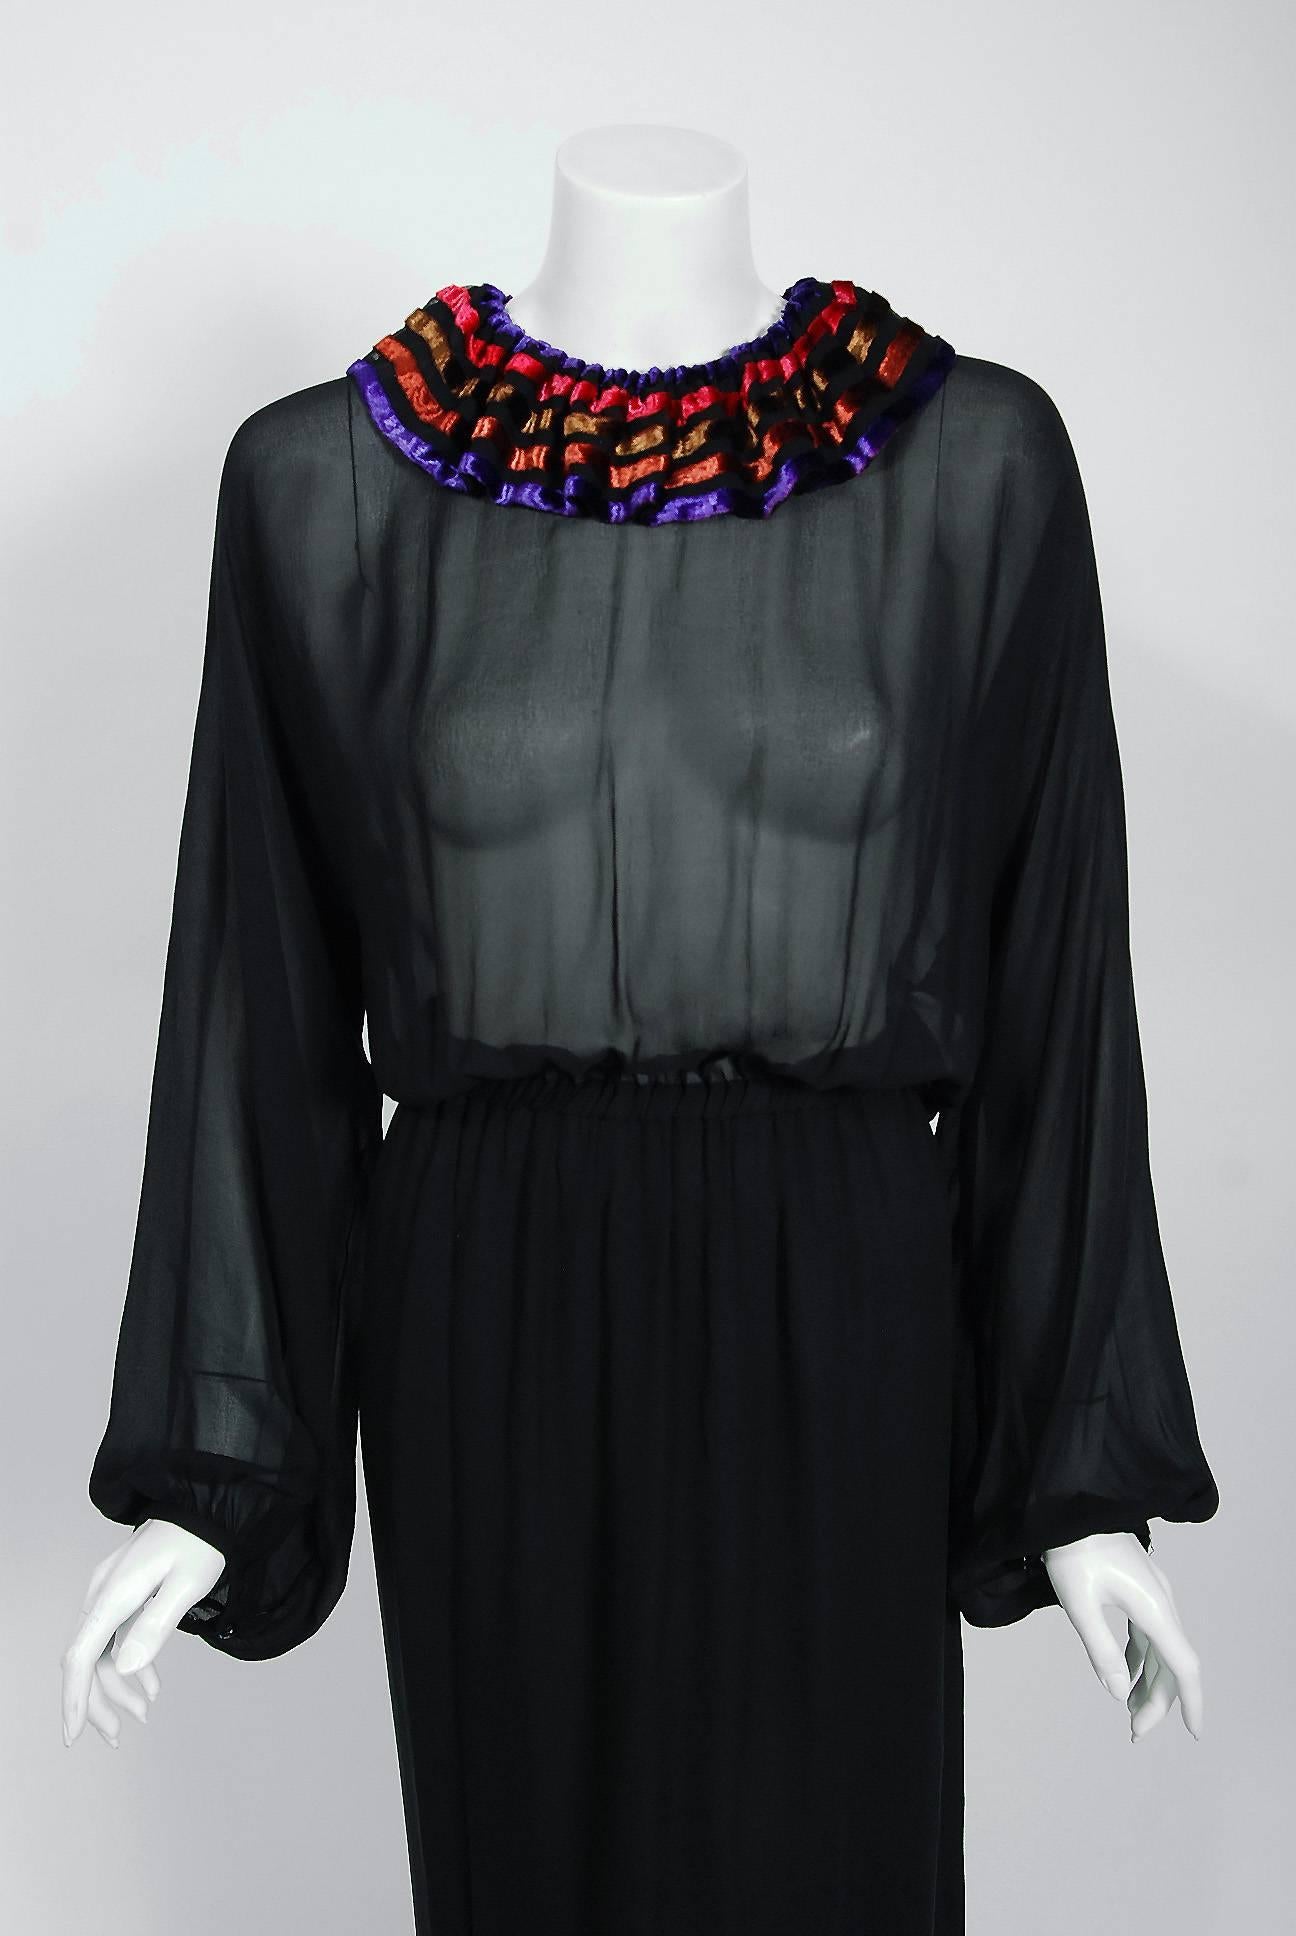 Cette très belle robe Lanvin Couture en mousseline de soie transparente, issue de la collection automne-hiver 1978, est une pièce de choix. J'adore l'ambiance bohème chic mélangée à un raffinement élégant. La garniture en velours rayé ajoute la